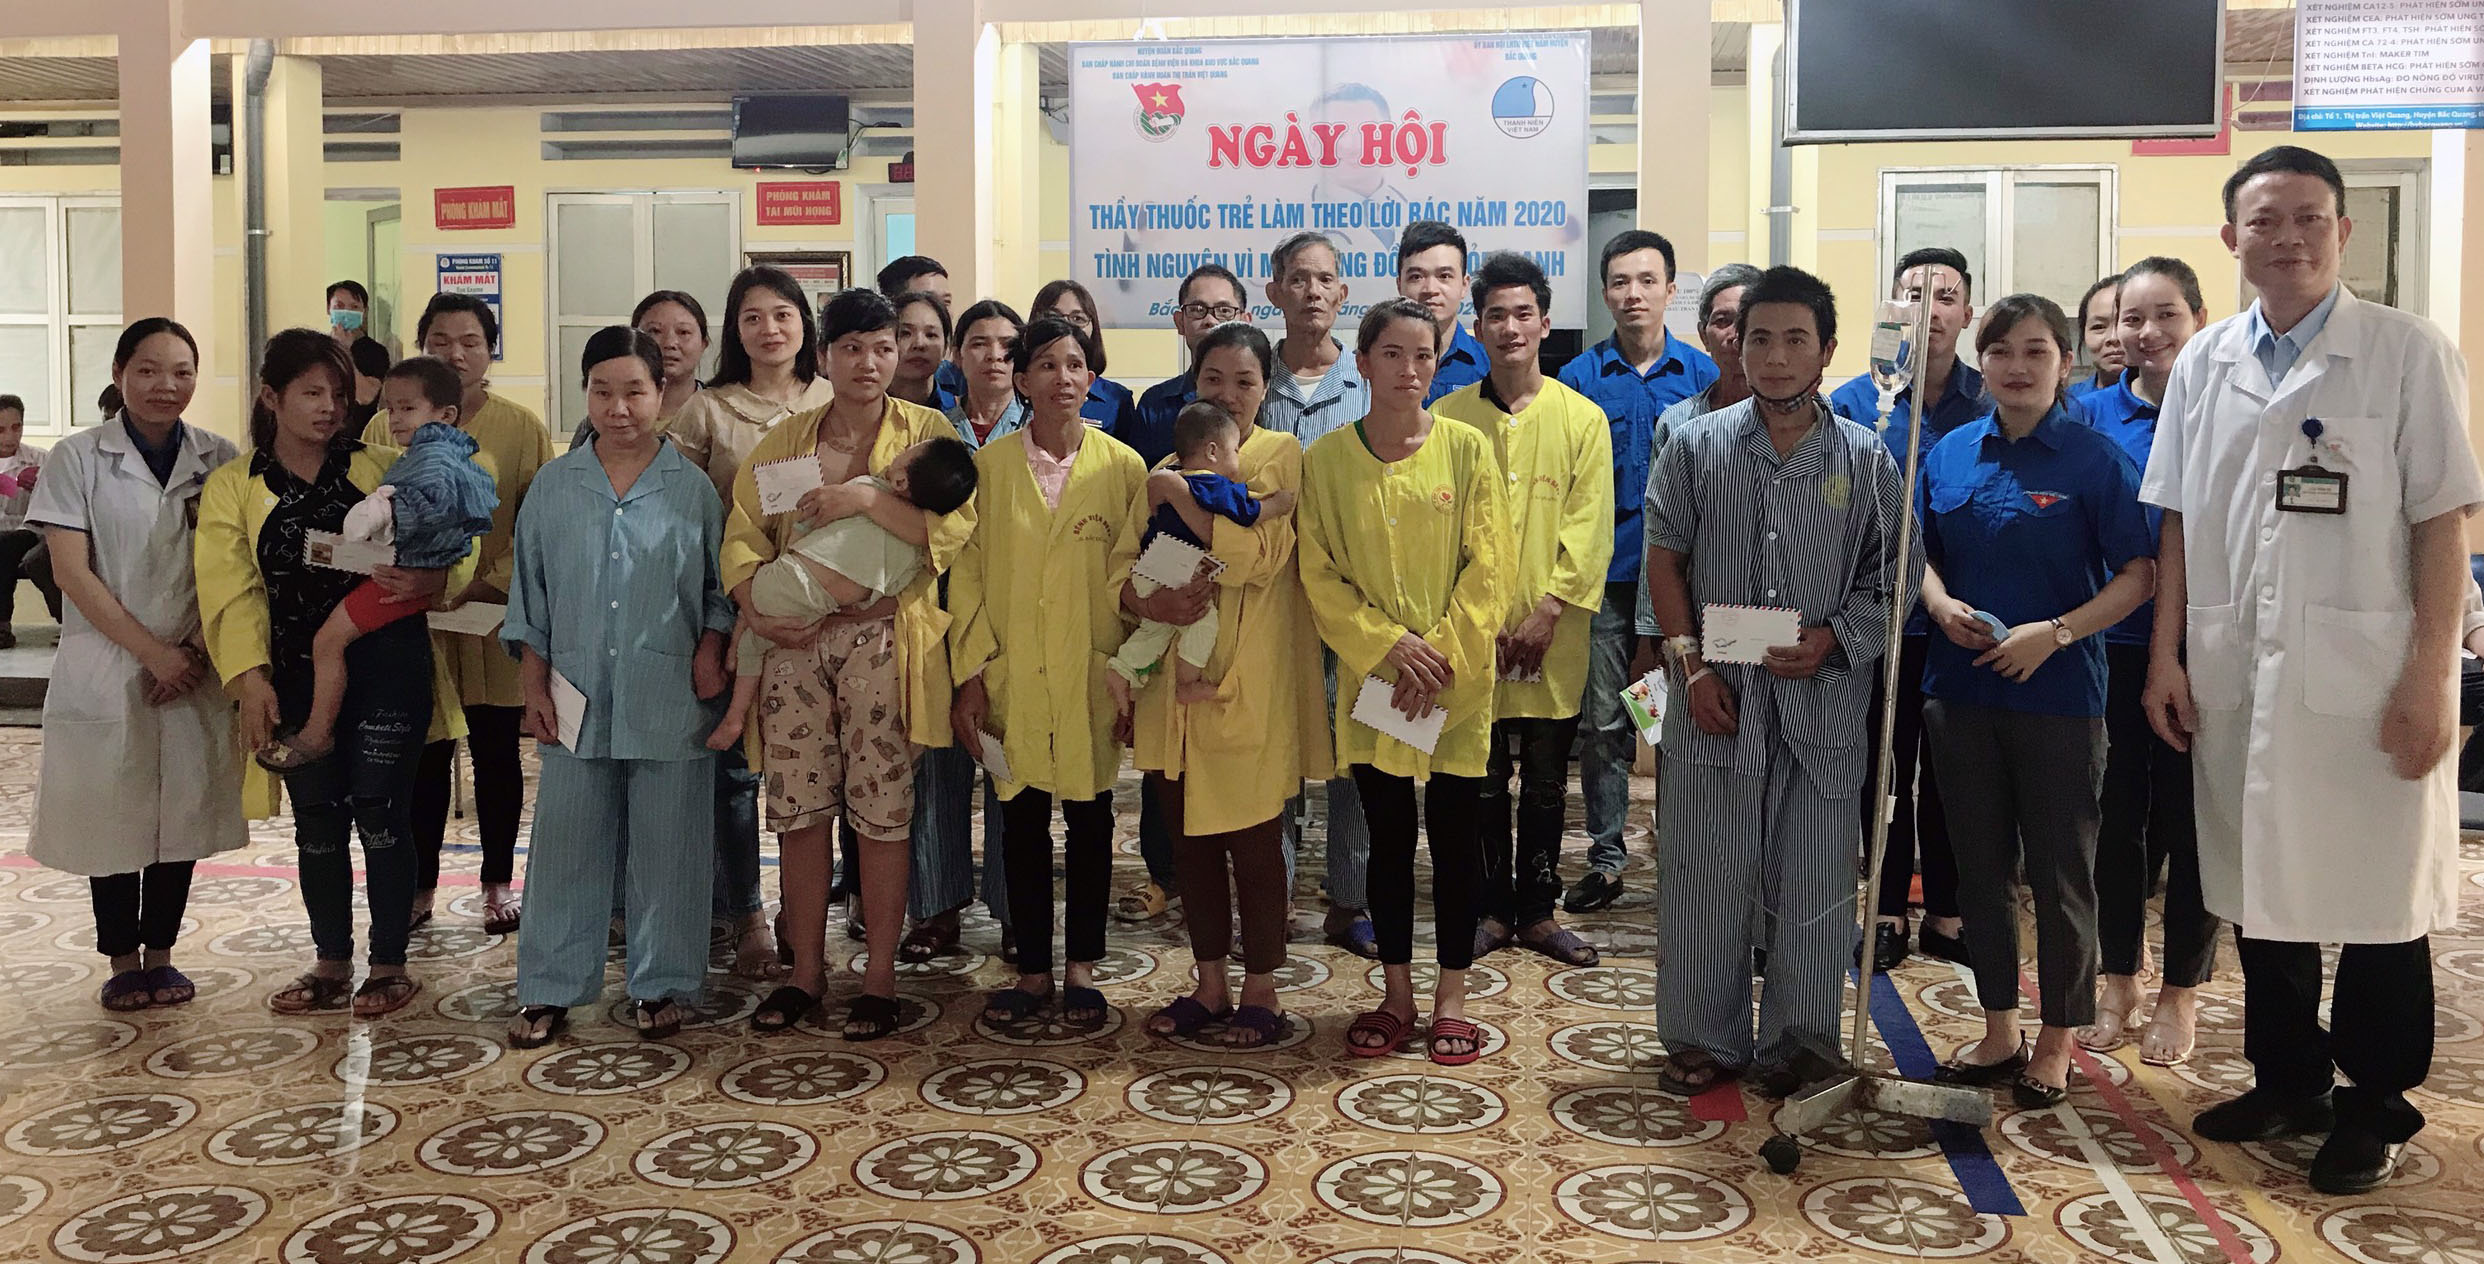 Đoàn Thanh niên Bệnh viện ĐKKV huyện Bắc Quang tổ chức hoạt động kỷ niệm 130 năm ngày sinh của Chủ tịch Hồ Chí Minh (19/5/1890 - 19/5/2020)